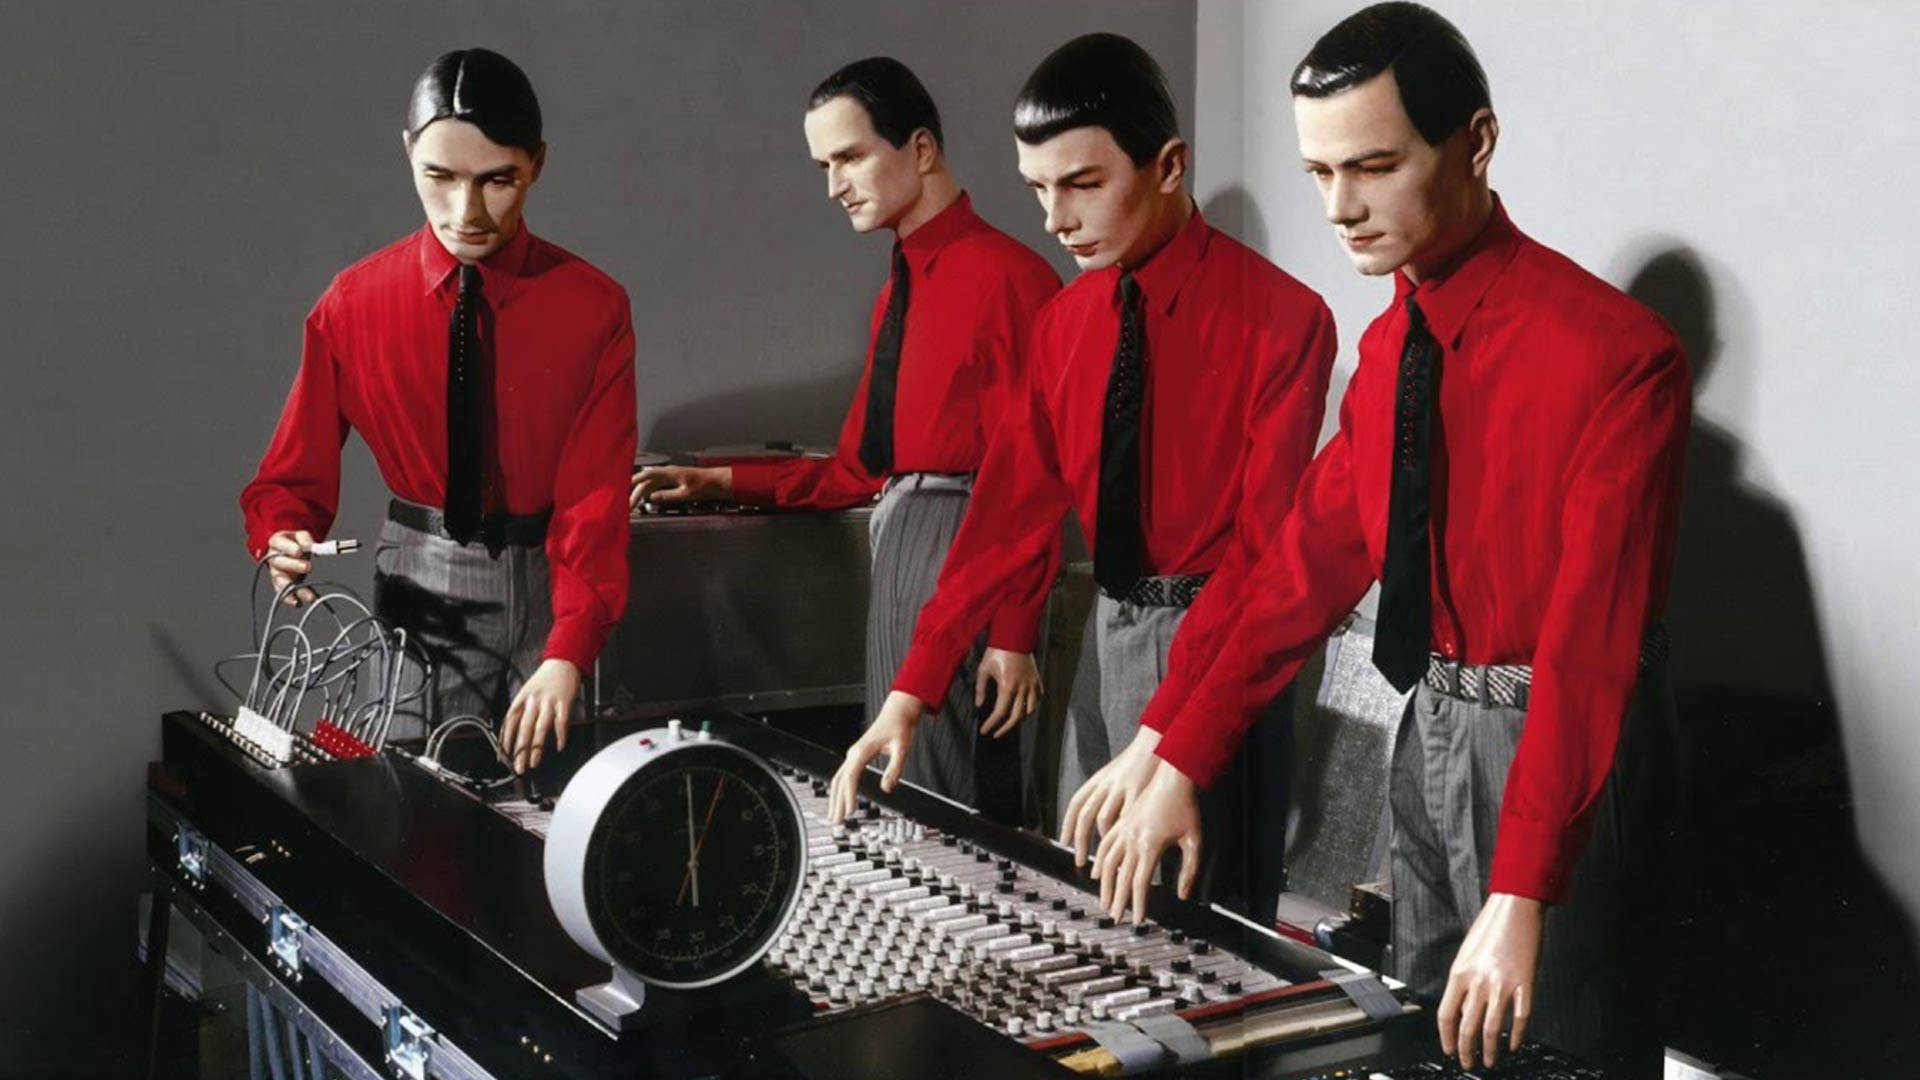 Kraftwerk Mannequins In The Studio Wallpaper